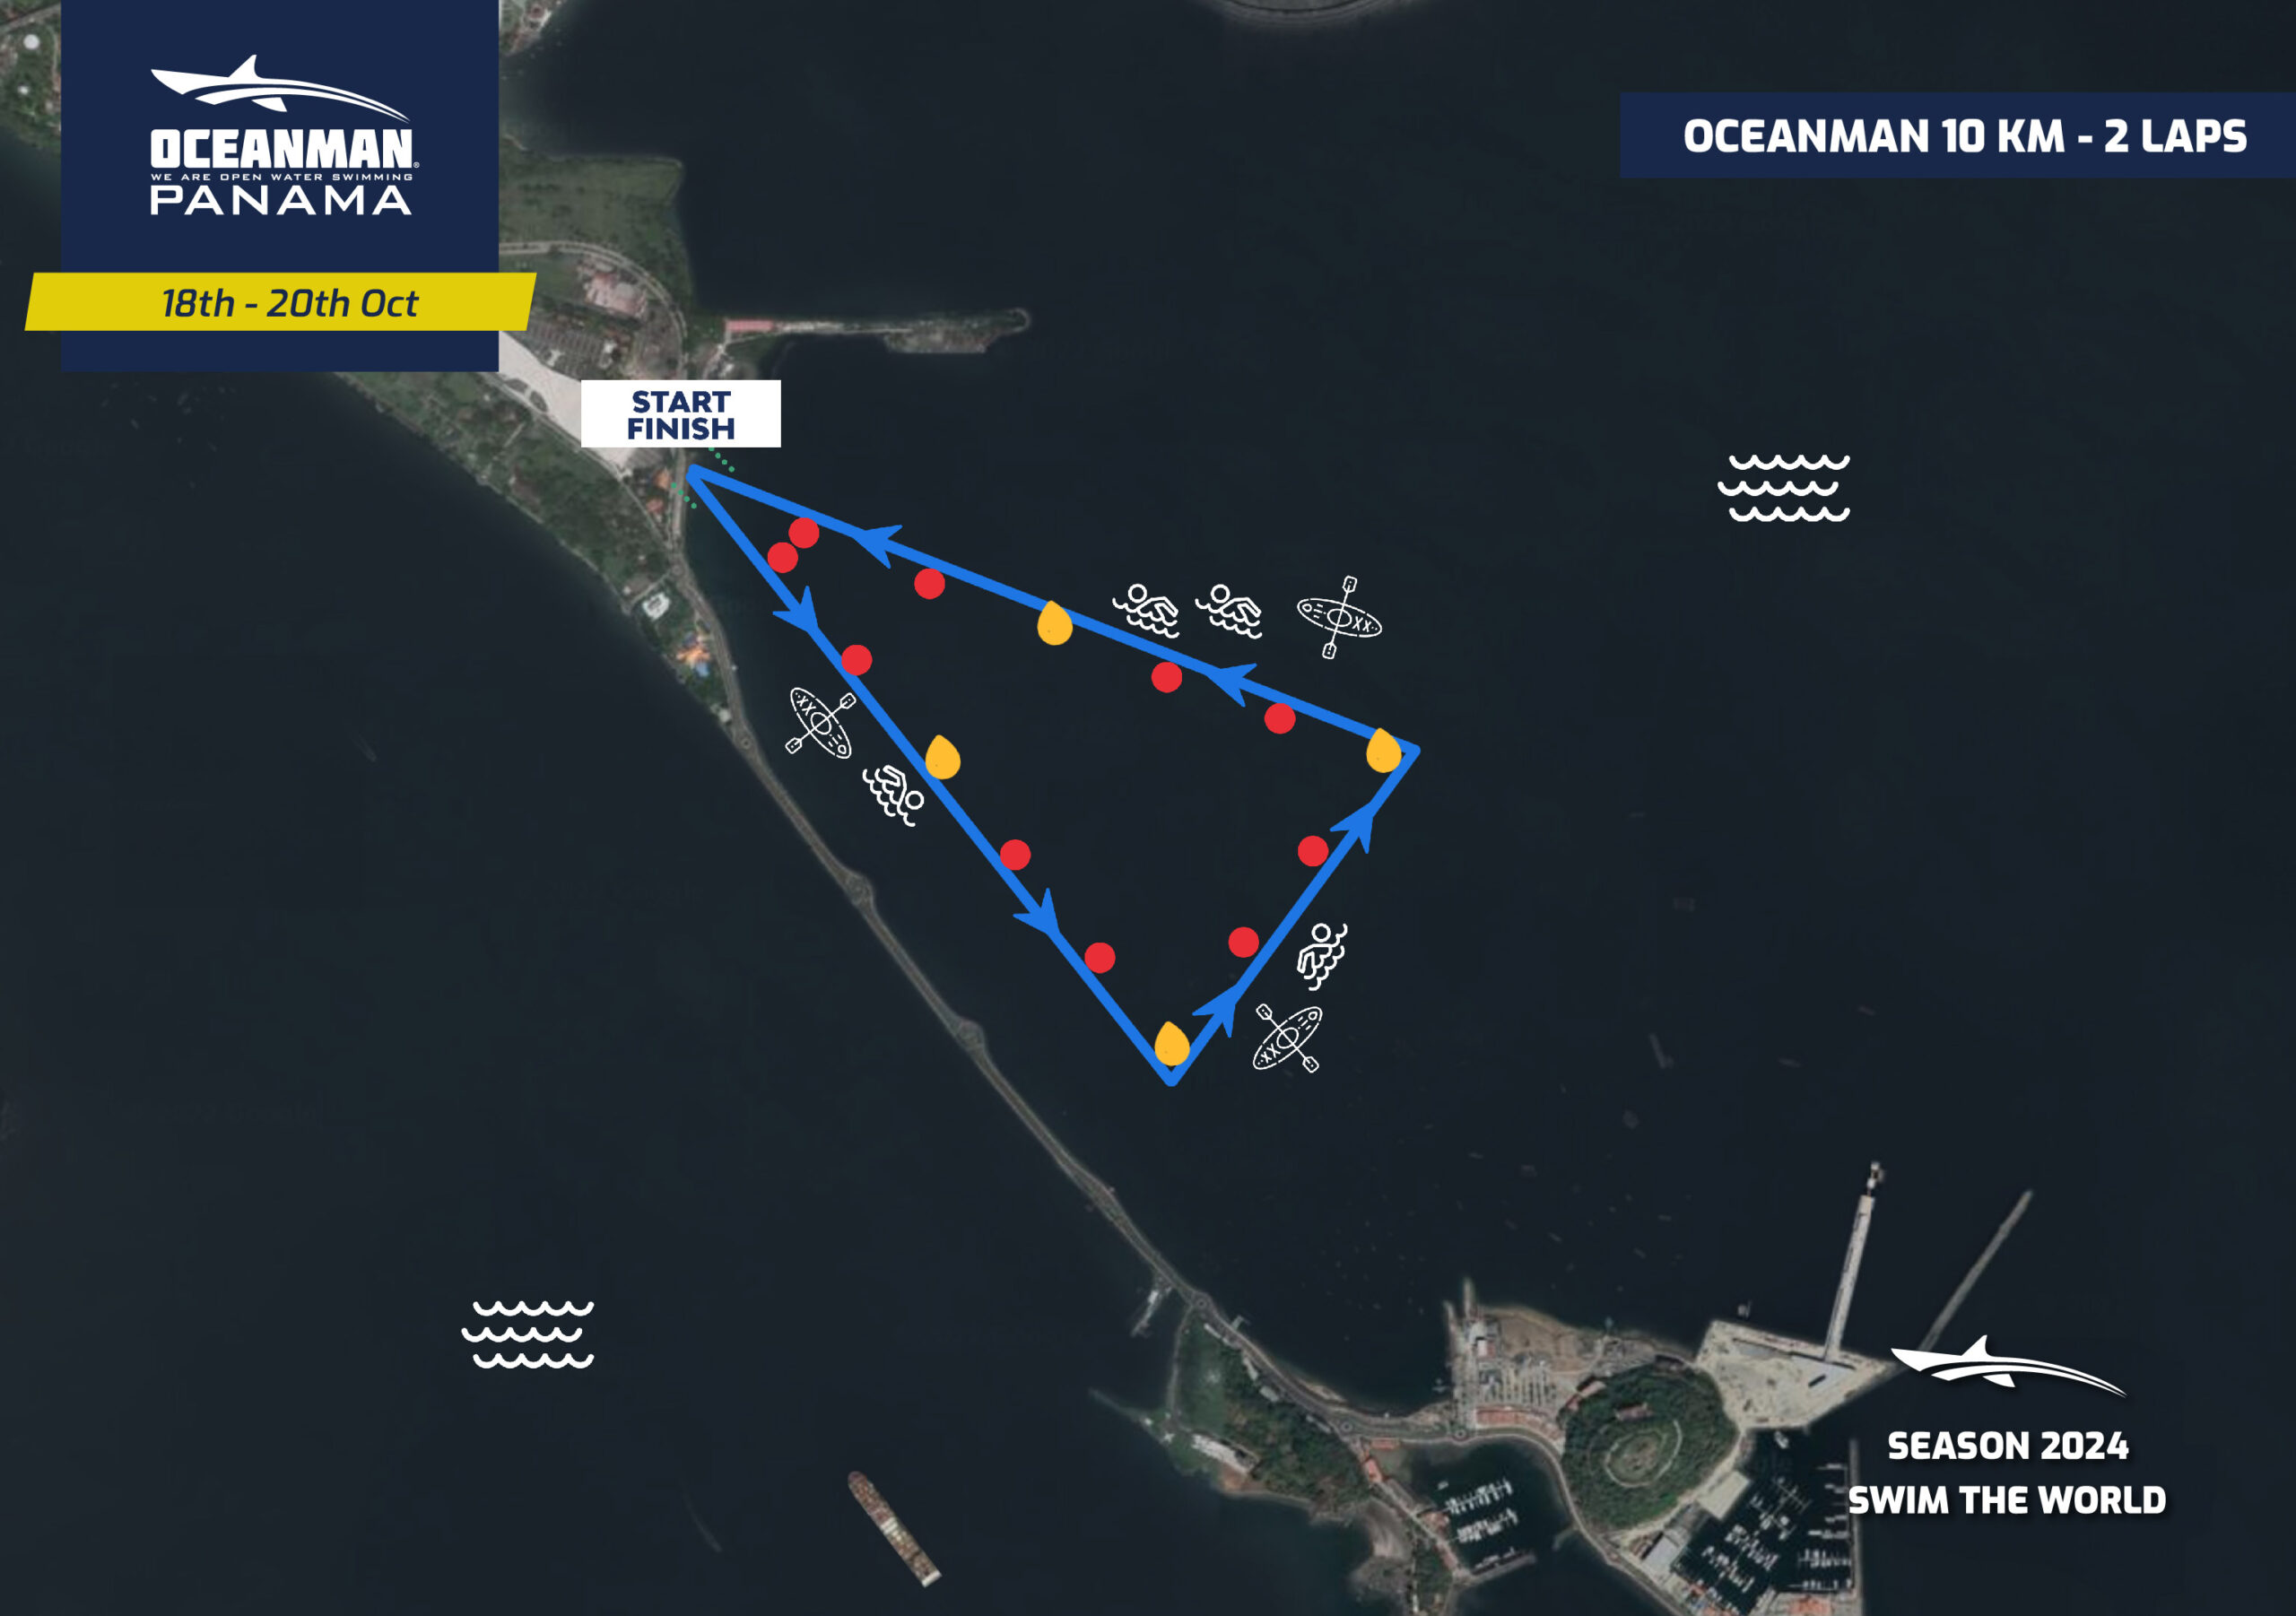 Panama - Oceanman 10 km